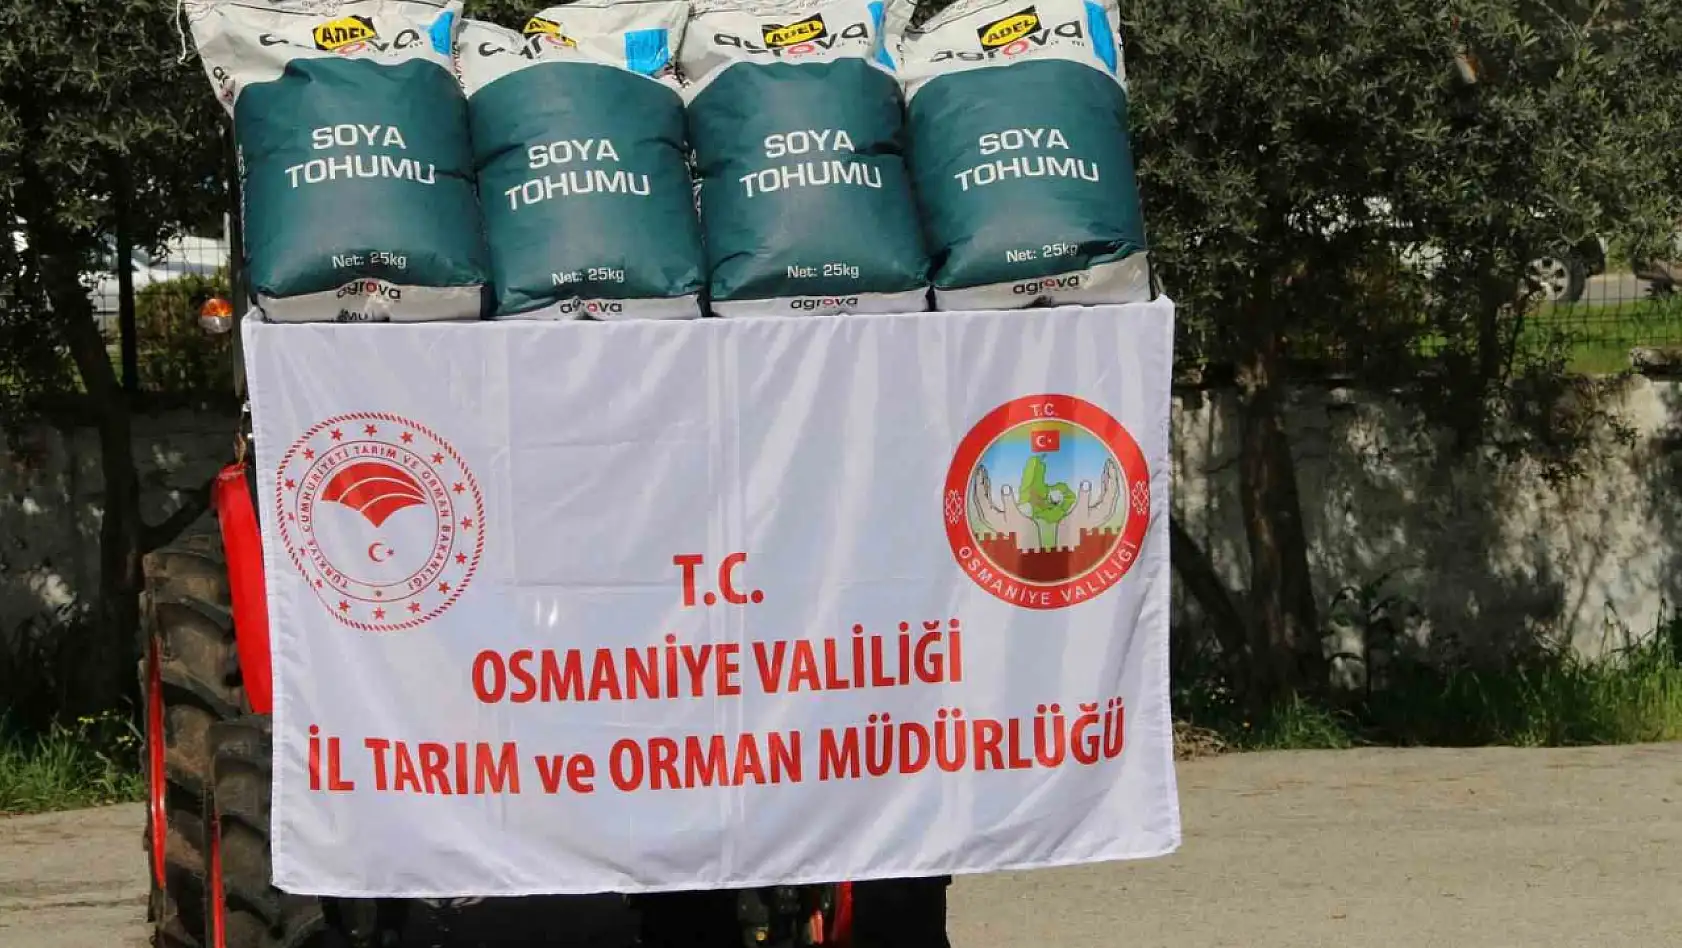 Osmaniye'de çiftçilere soya desteği